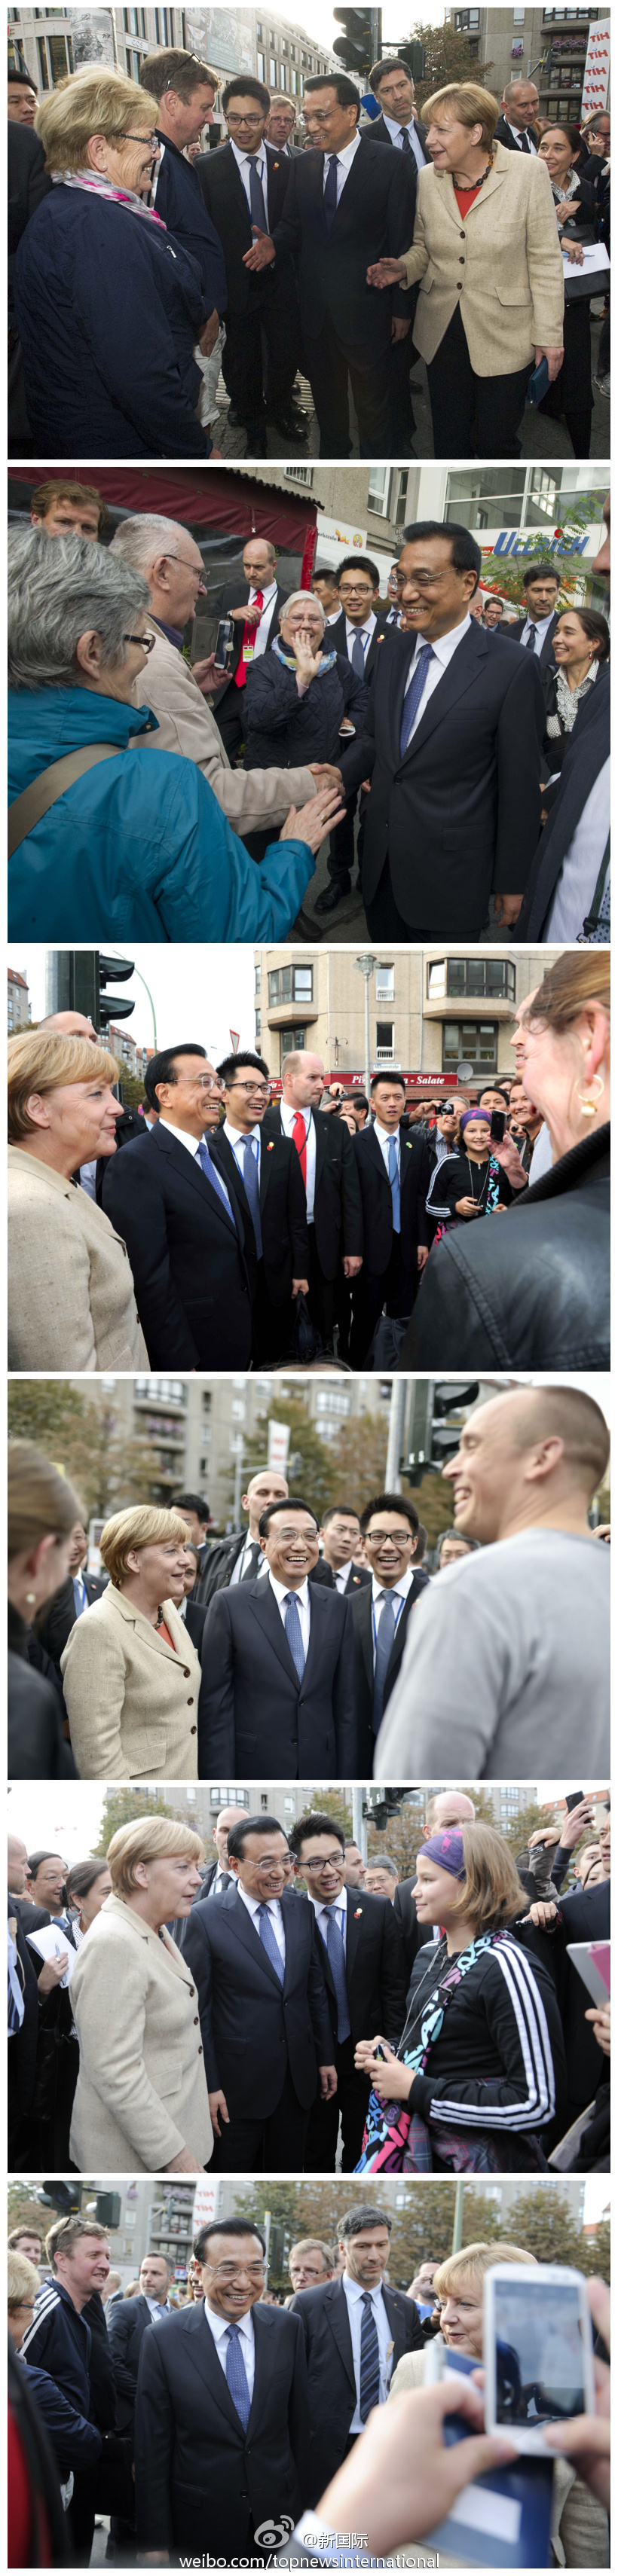 中德兩國總理柏林街頭與民眾親切交流